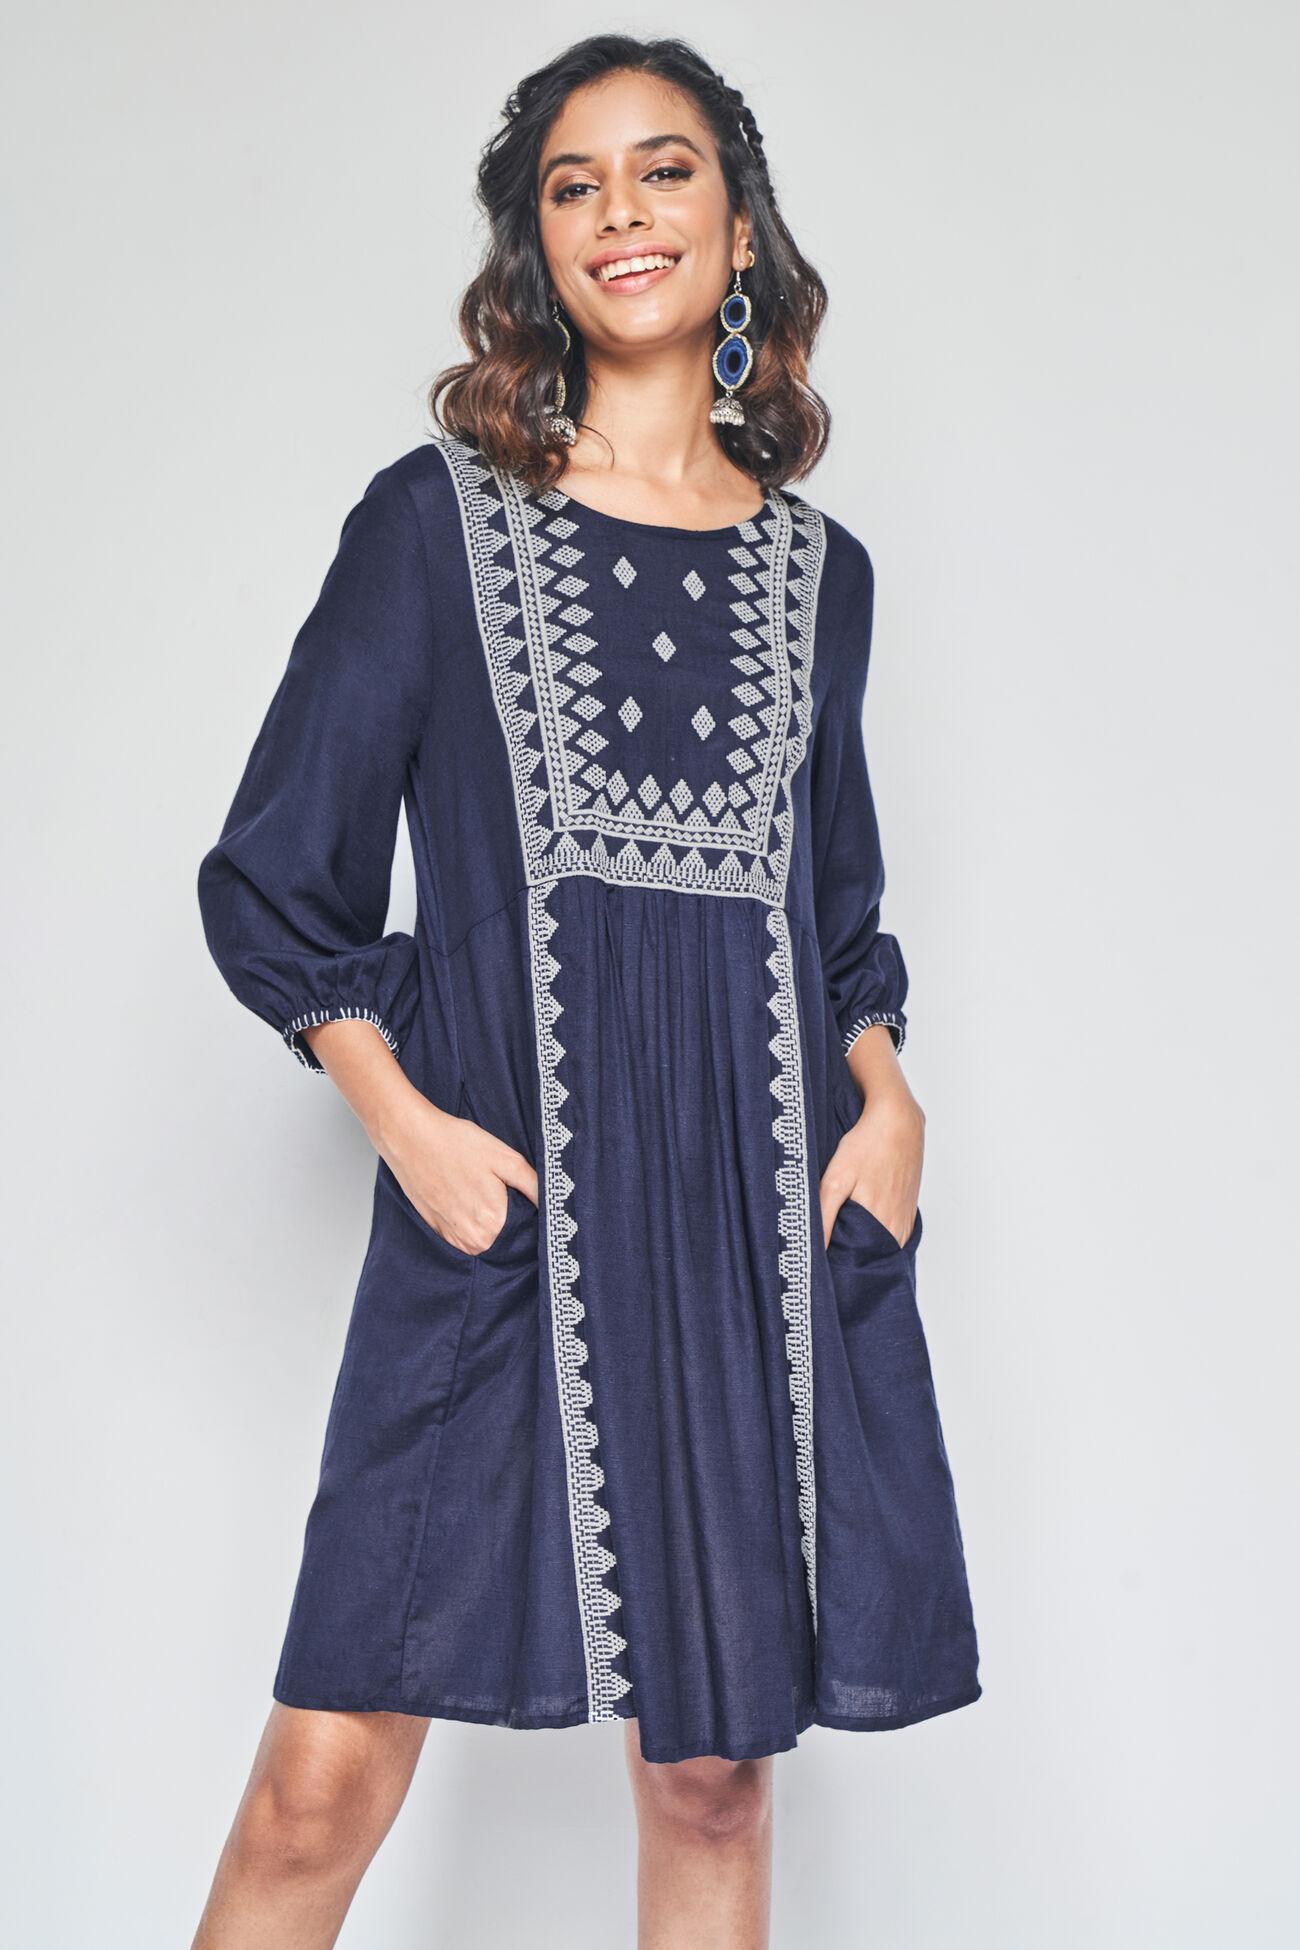 neelakshi embroidered dress